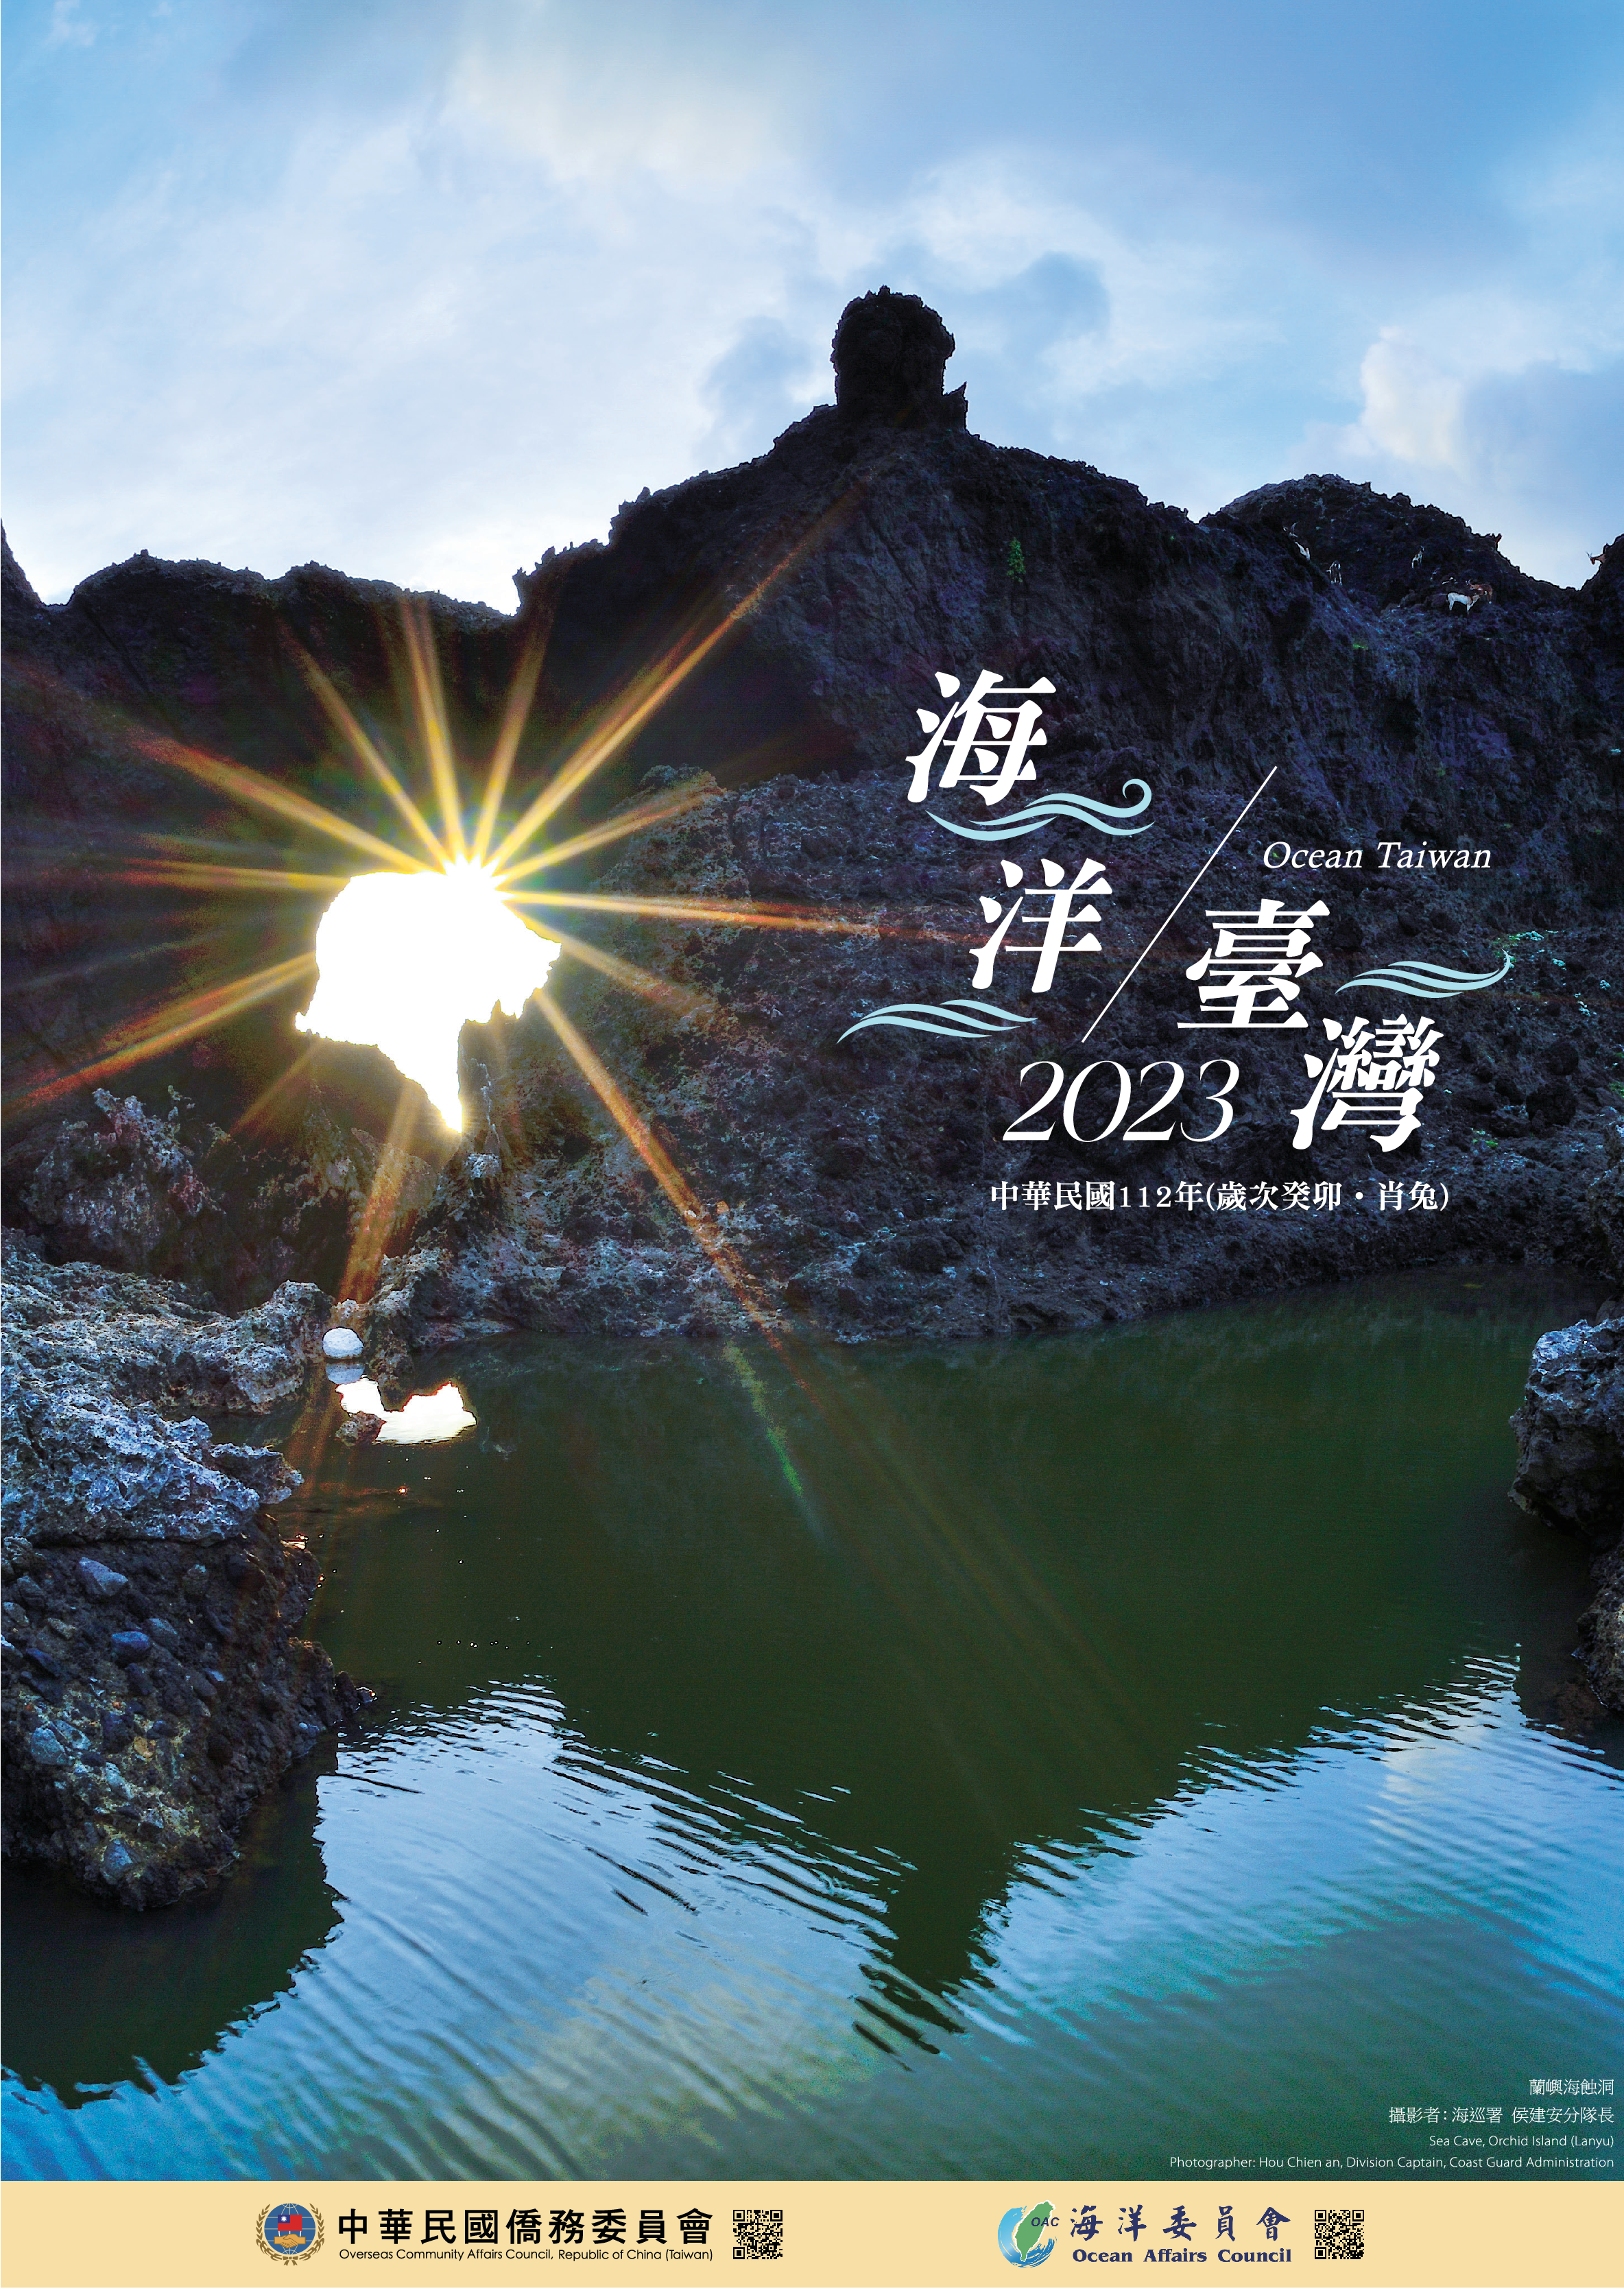 2023年僑務委員會「海洋臺灣」月曆